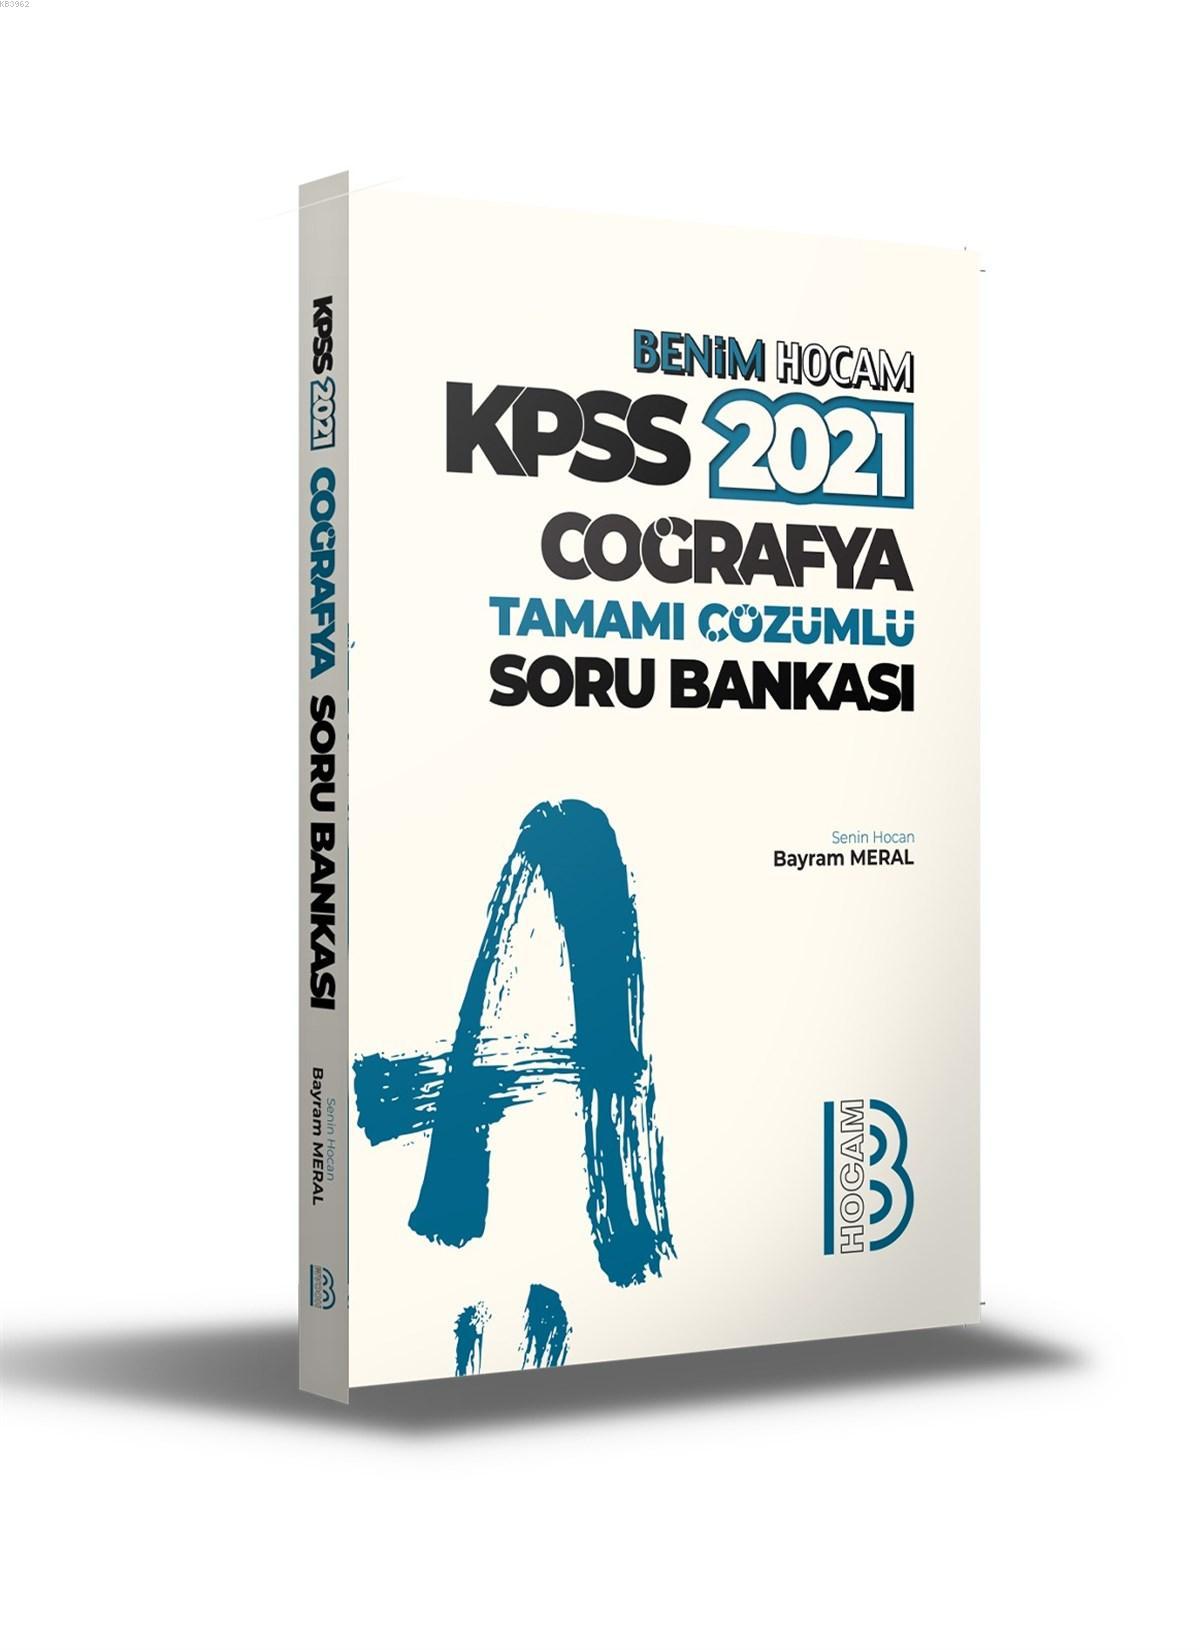 2021 KPSS Coğrafya Tamamı Çözümlü Soru Bankası Benim Hocam Yayınları